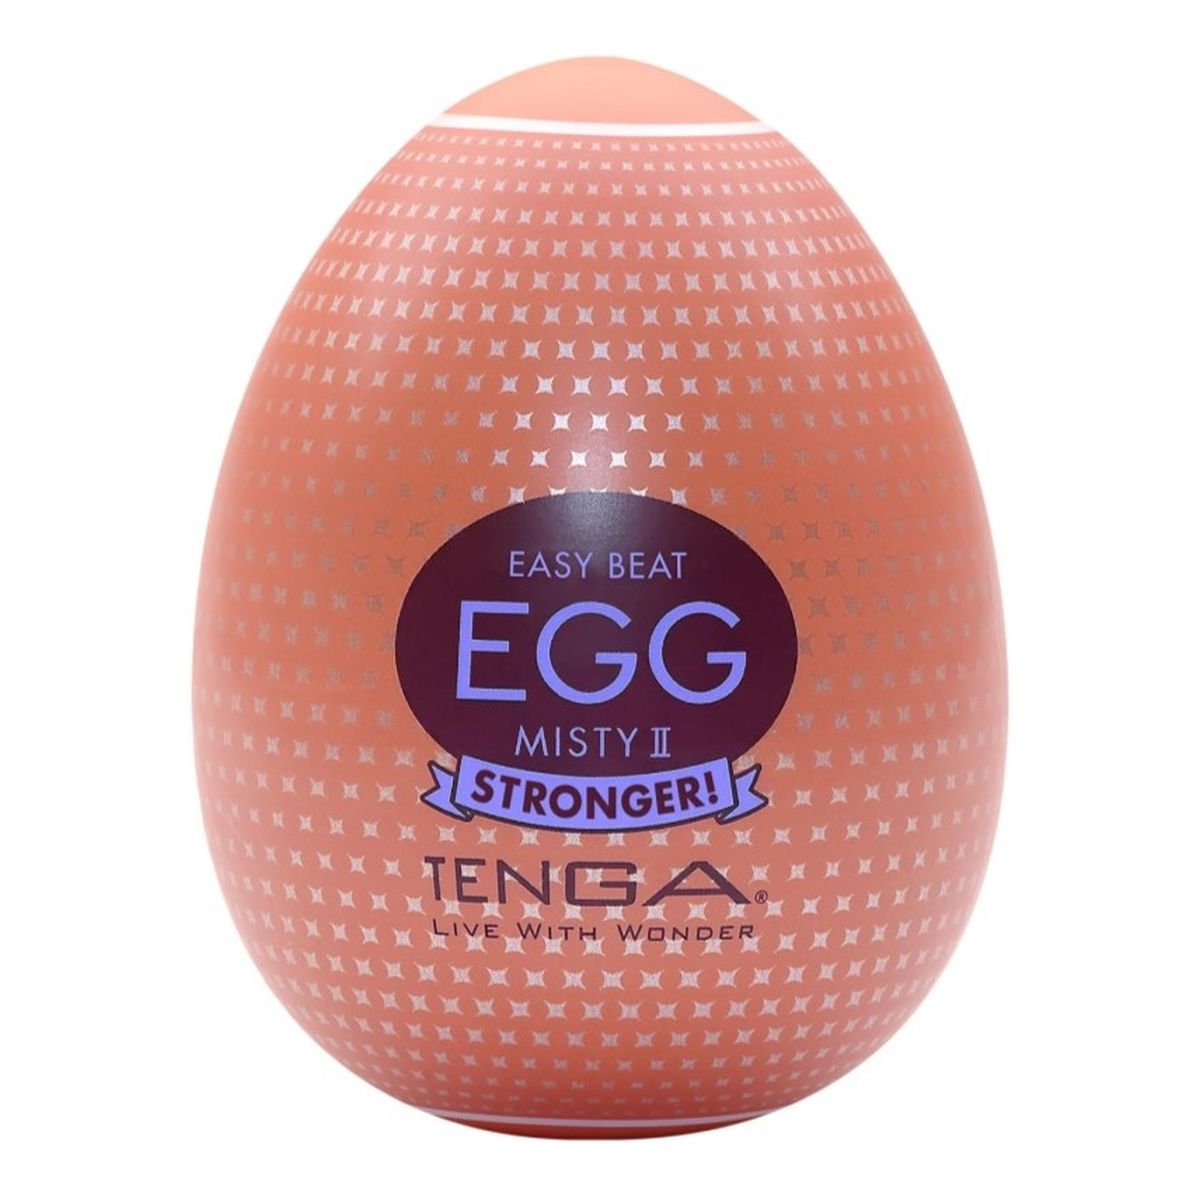 Tenga Easy beat egg misty ii stronger jednorazowy masturbator w kształcie jajka